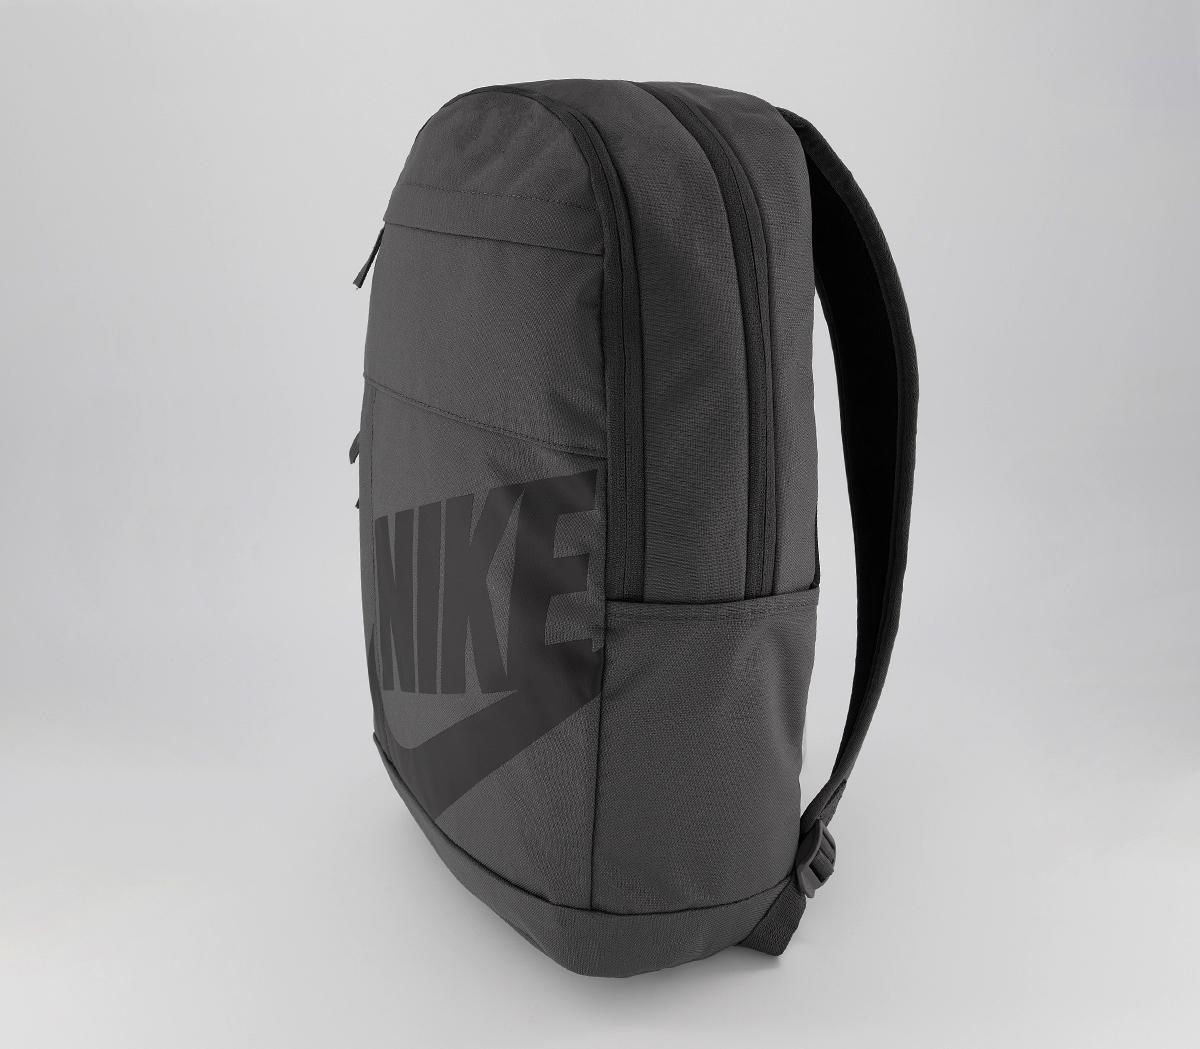 Nike Nike Elemental Backpack 2.0 Thunder Grey Black - Accessories